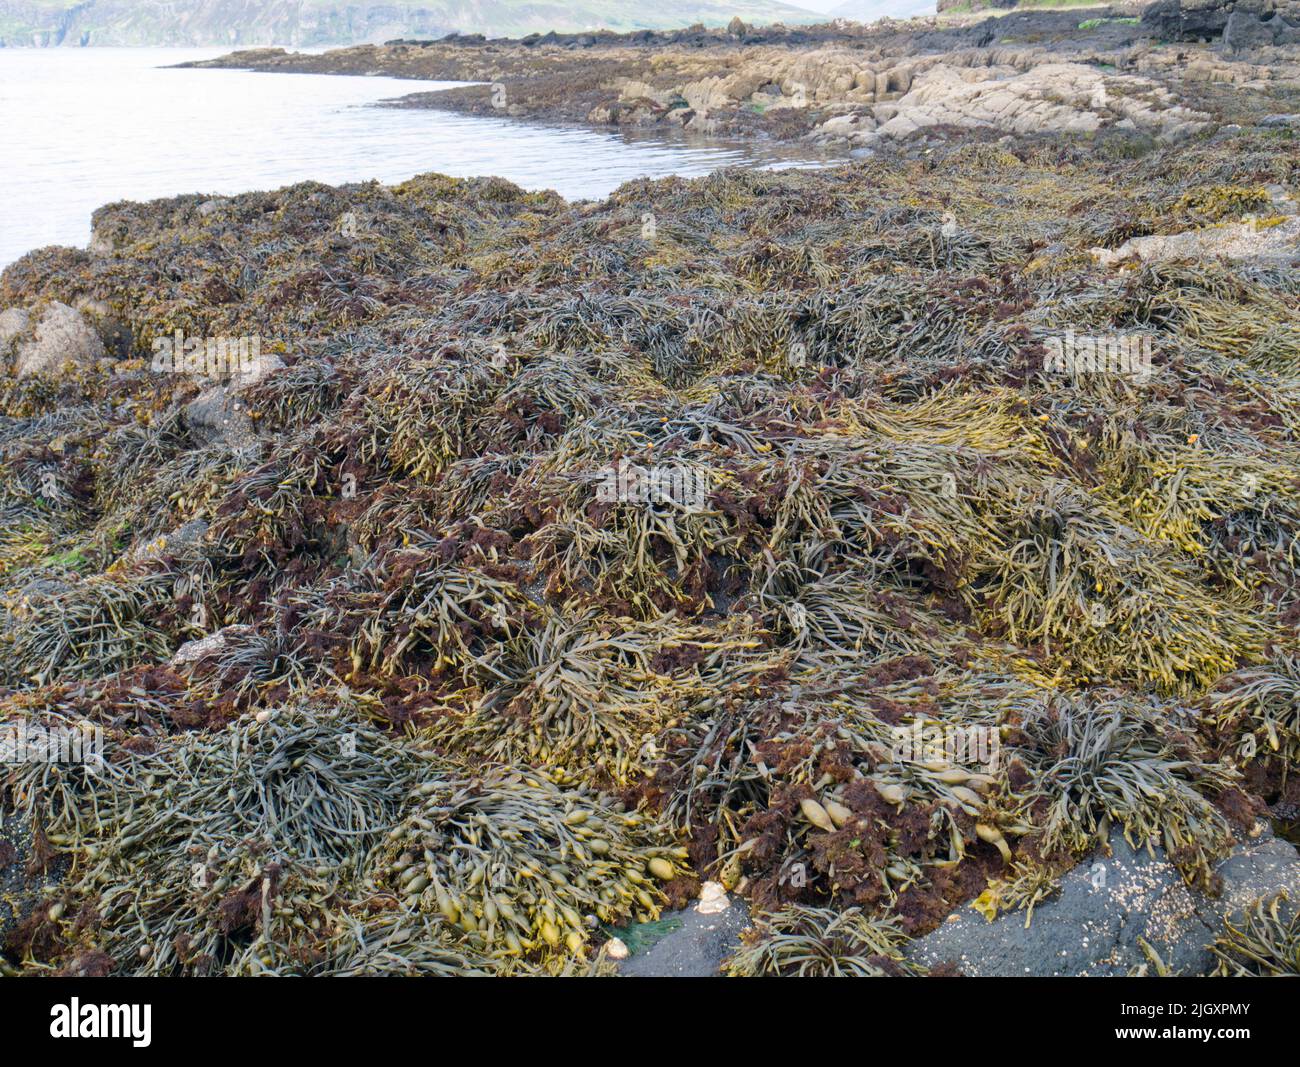 Bladderwrack seaweed on Scottish shoreline Stock Photo